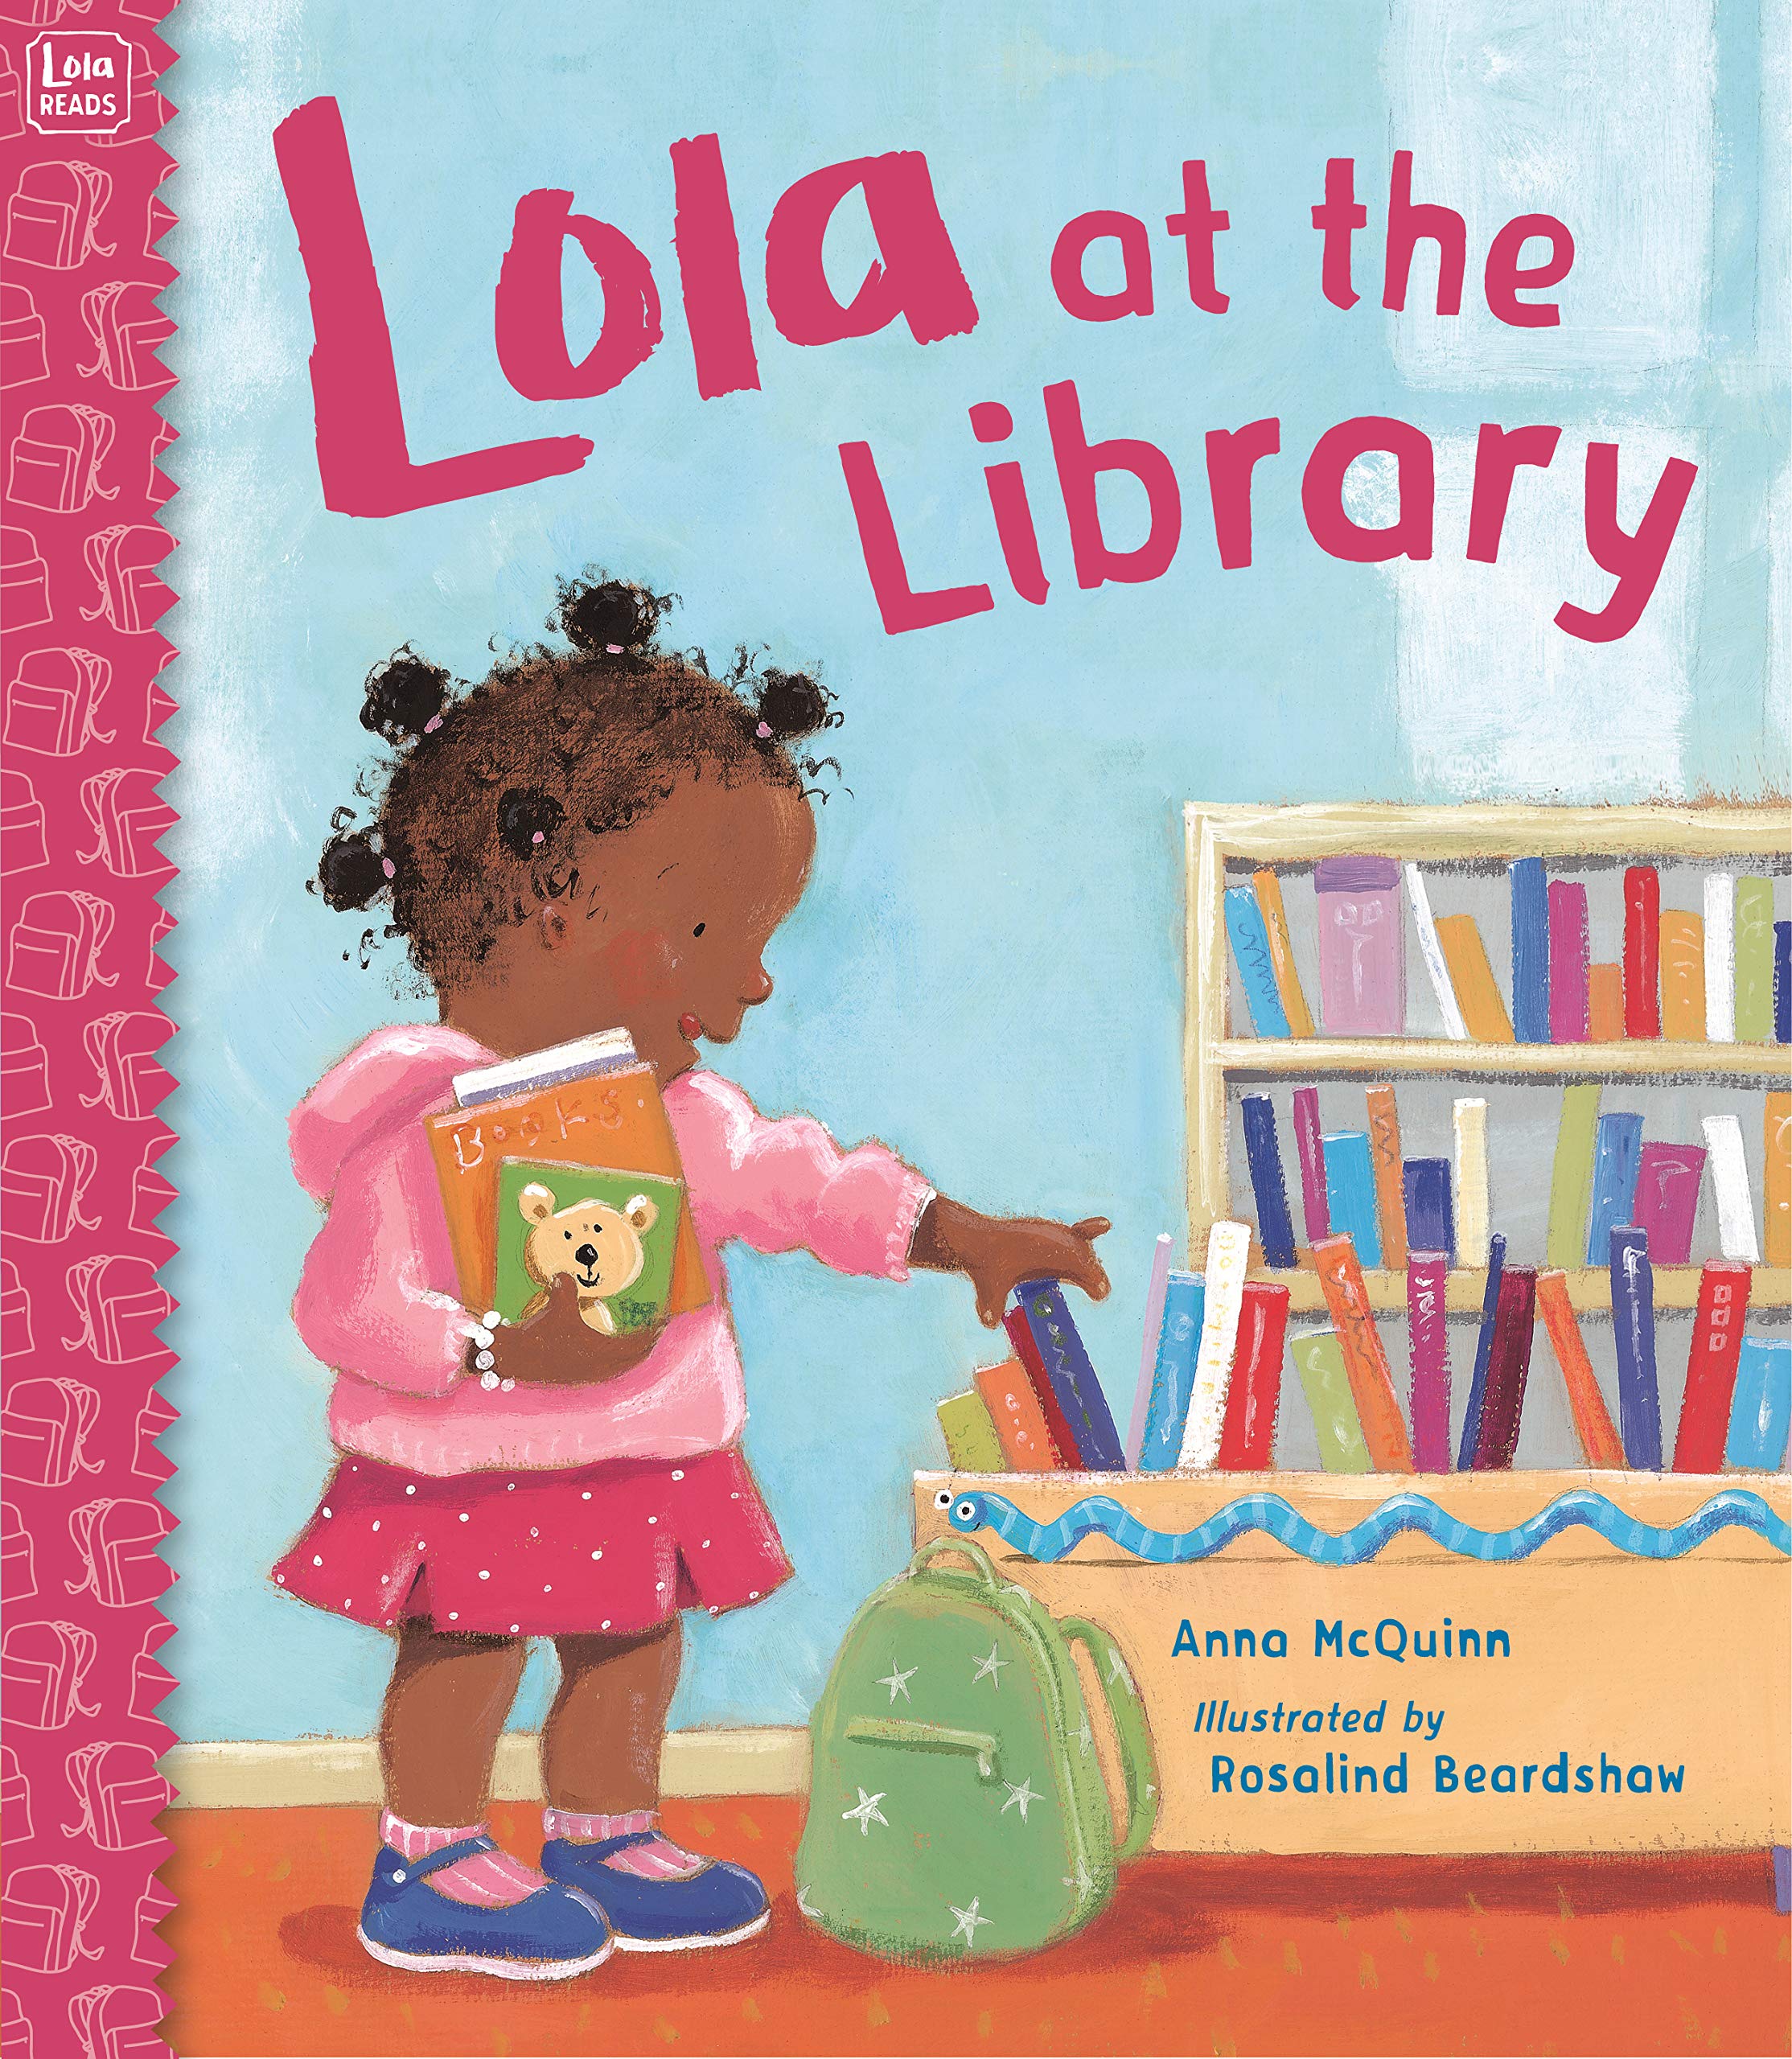 Lola at the Library - Anna McQuinn